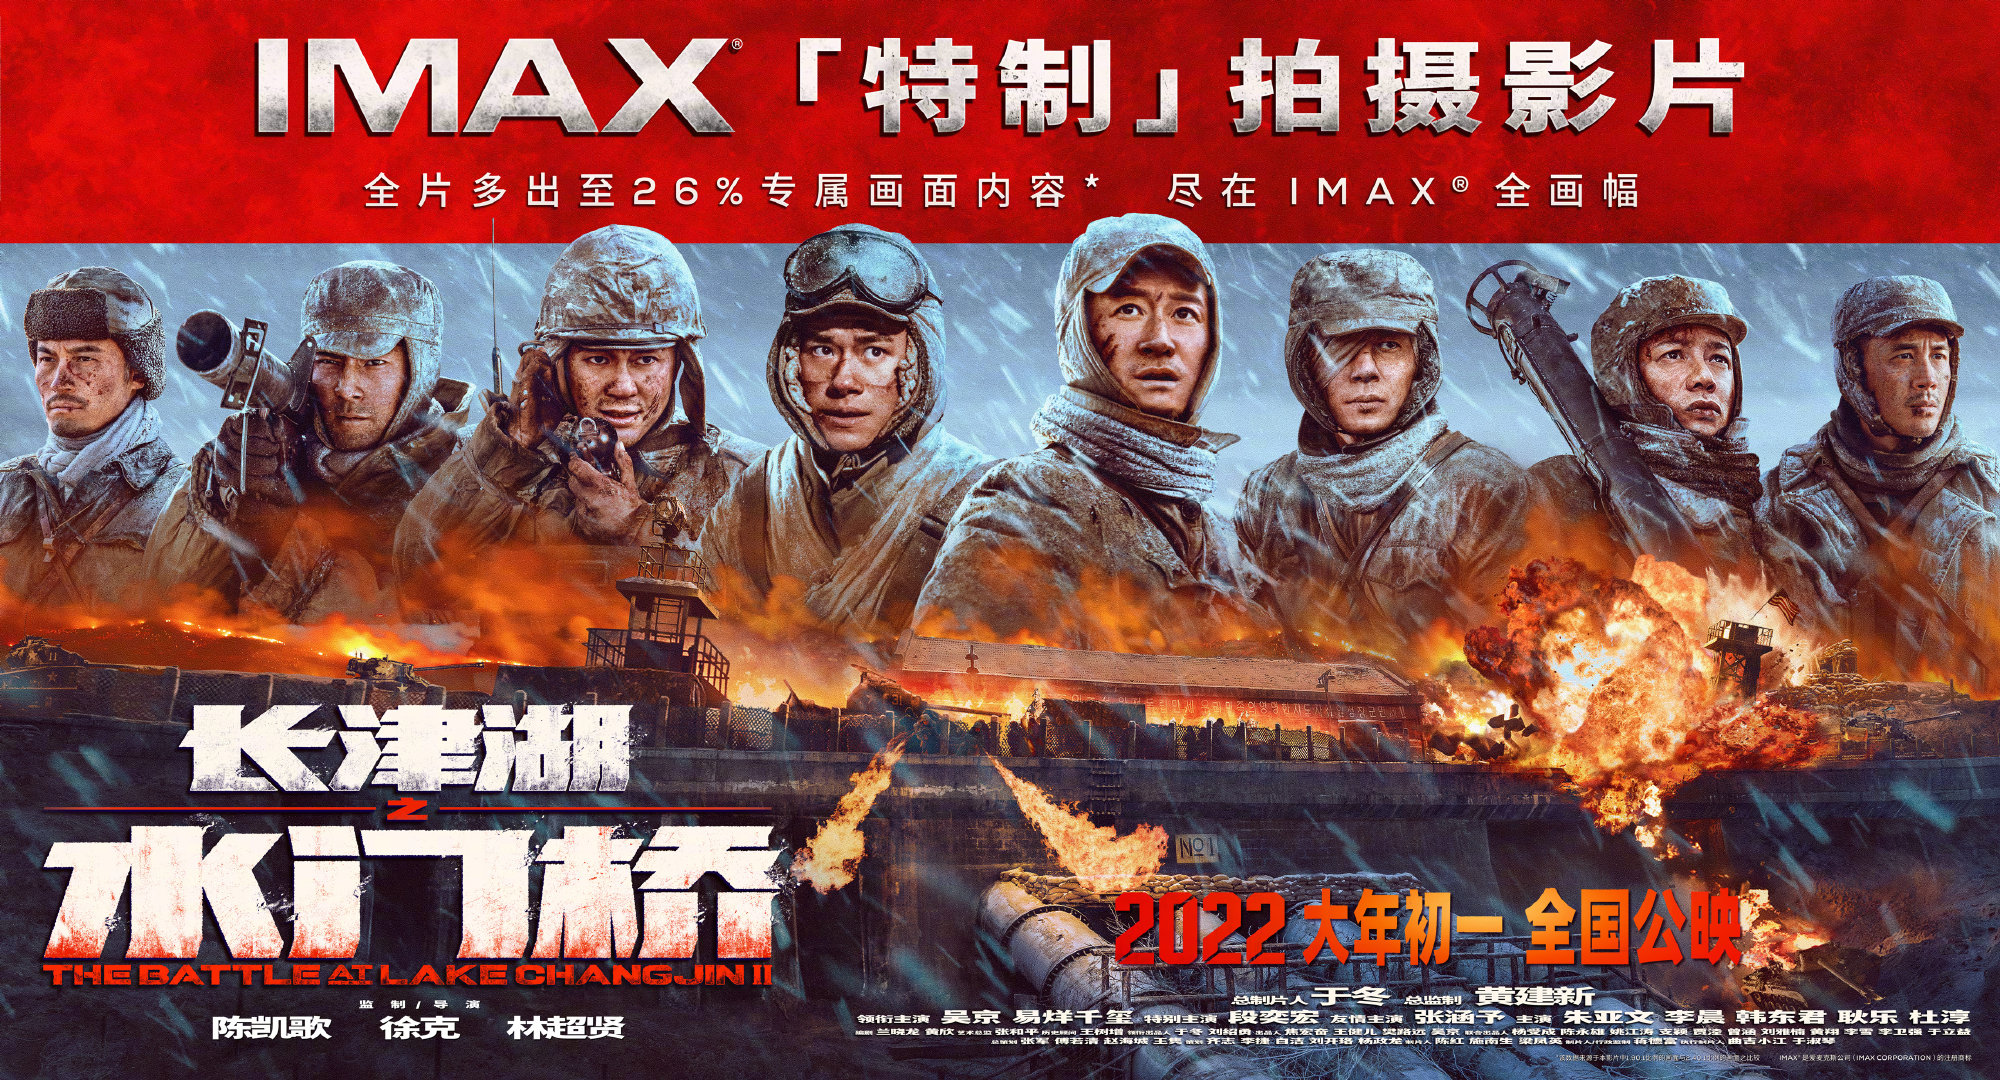 电影《长津湖之水门桥》 IMAX海报和剧照在新年第一天公布并上映。